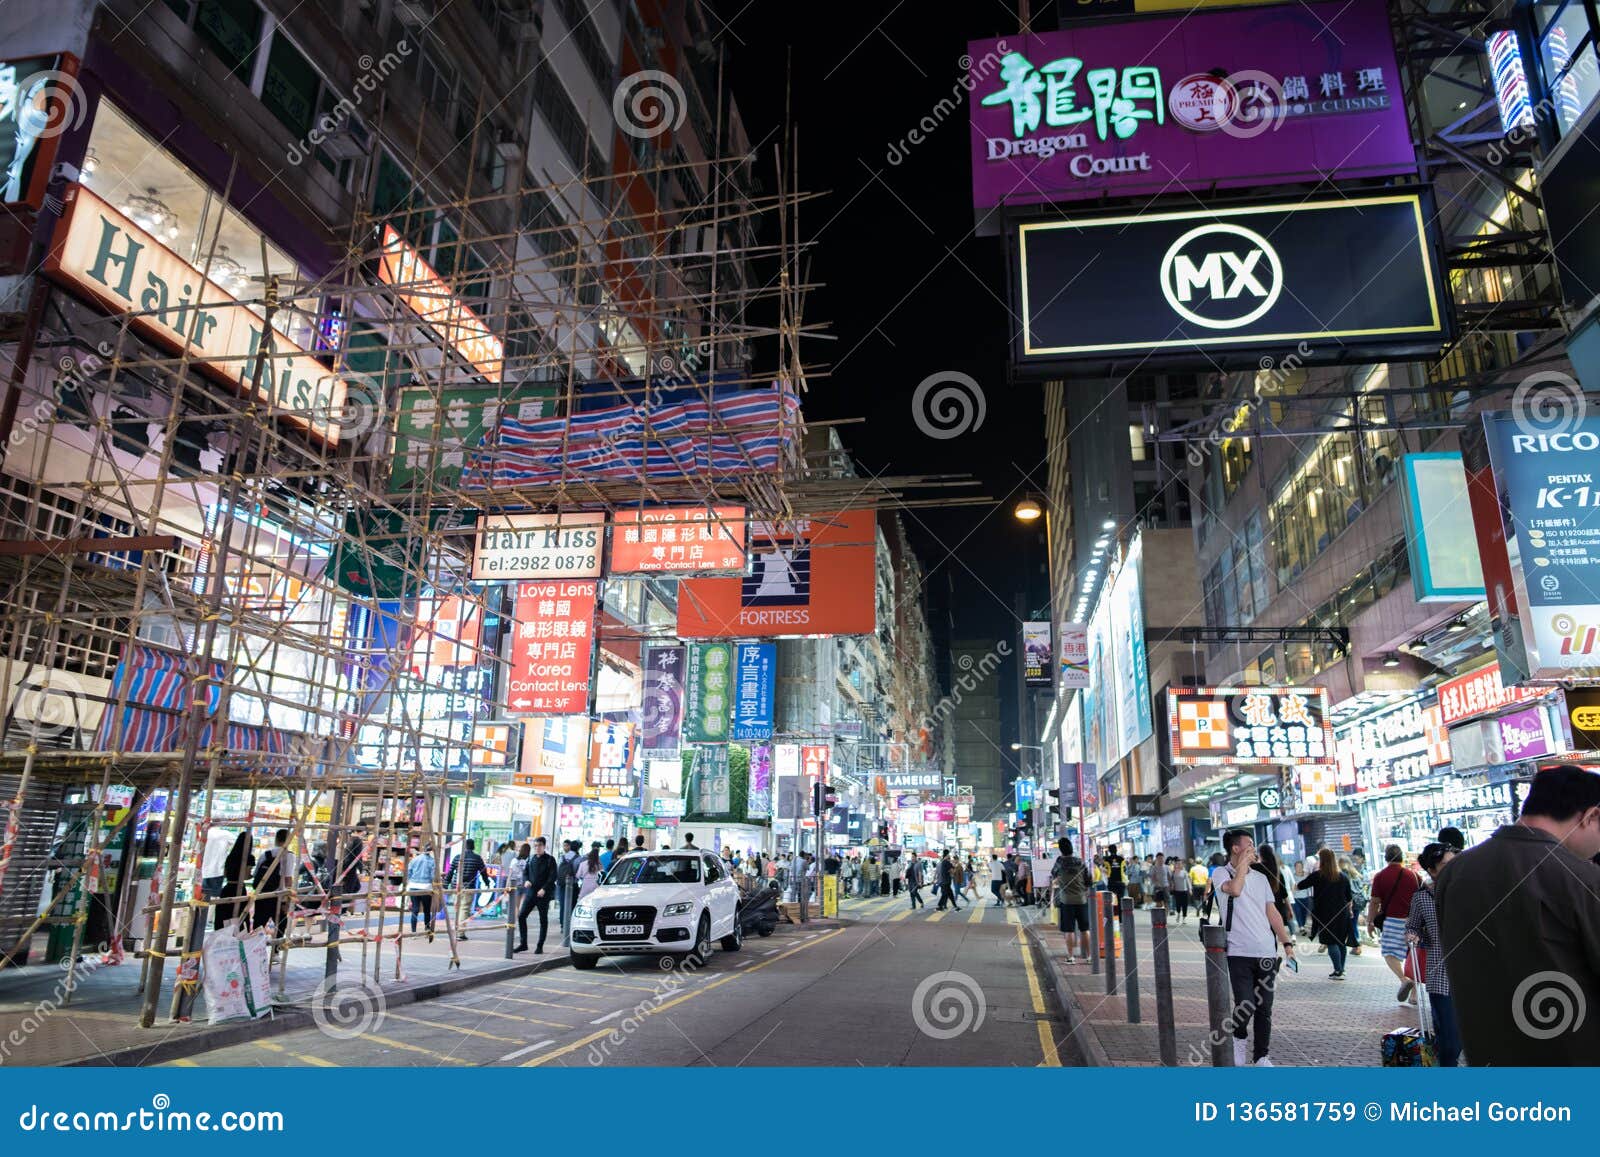 Hong Kong Vibrant Global City Editorial Stock Image - Image of